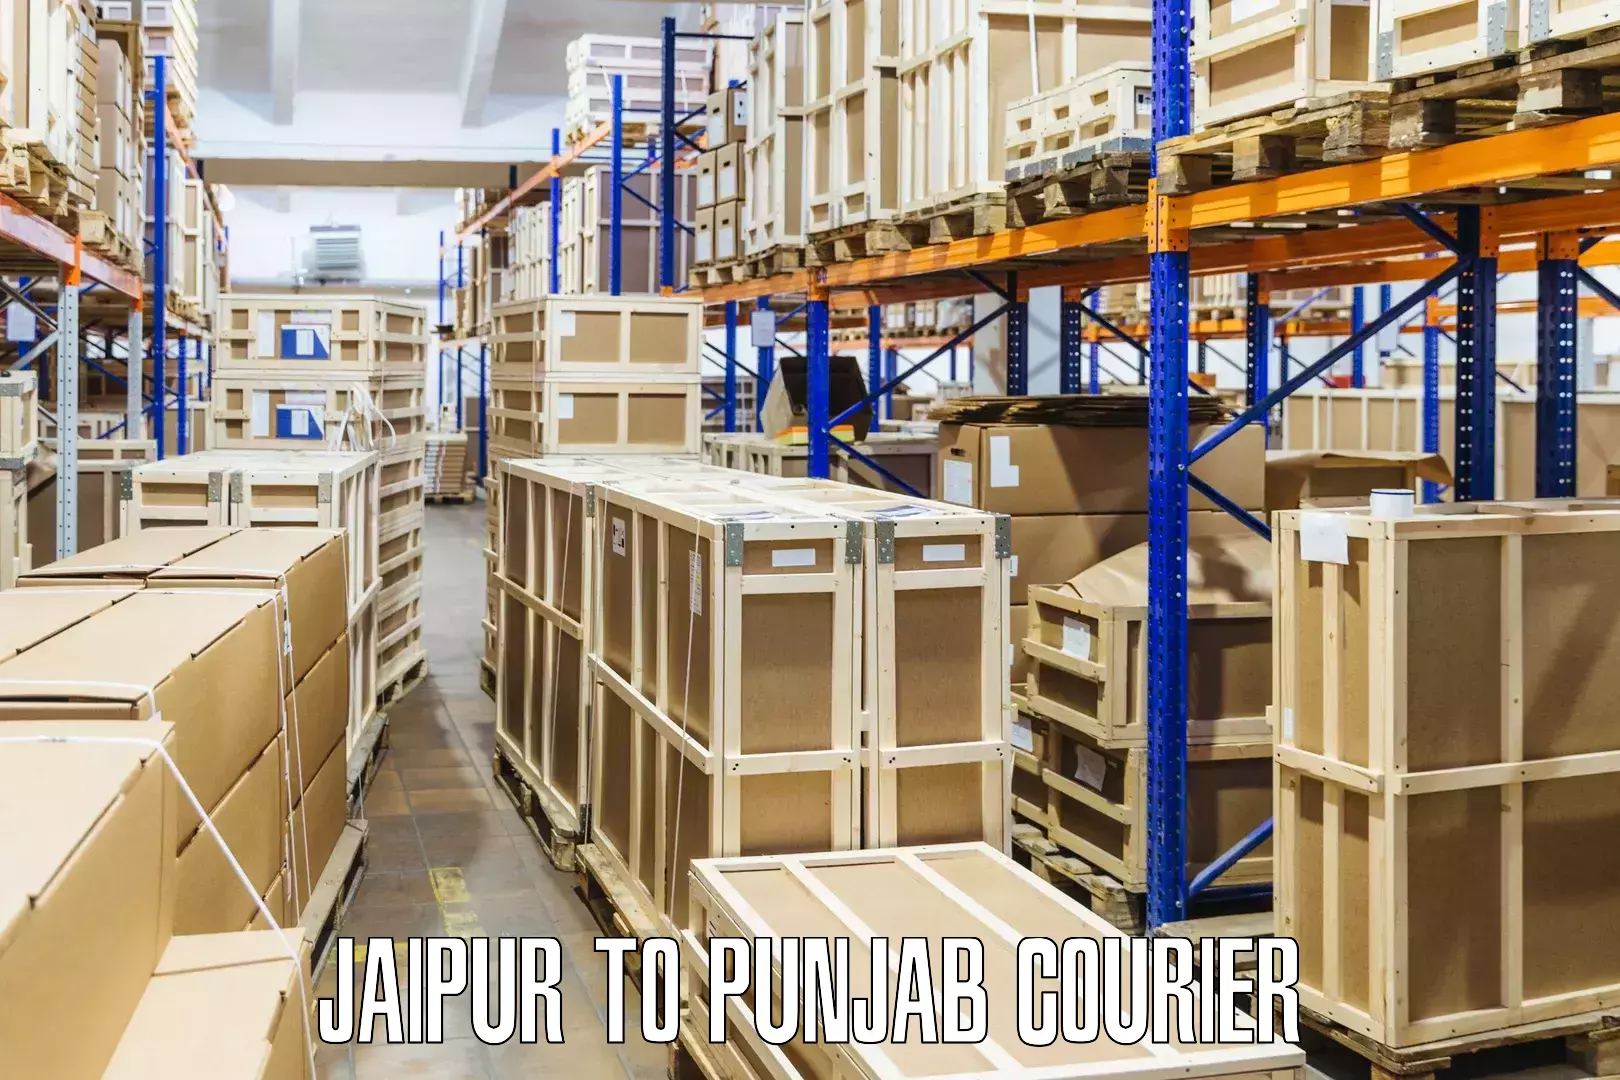 On-call courier service Jaipur to Patti Tarn Tara